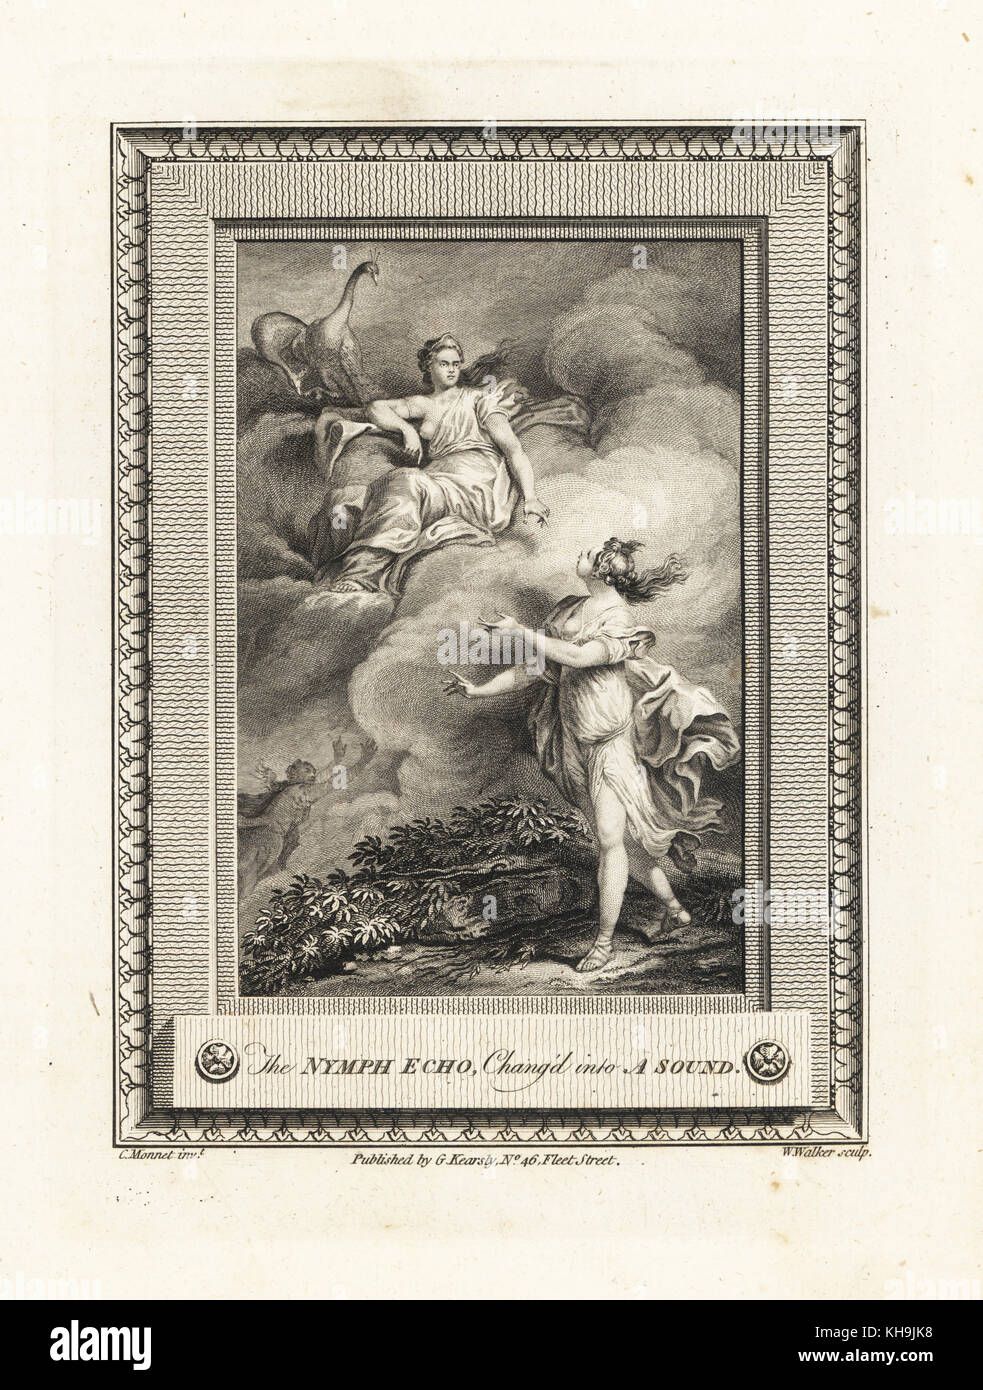 La ninfa ECHO si è trasformato in un suono da Hera. Incisione su rame di W. Walker dopo una illustrazione di C. Monnet dalla piastrina di rame rivista mensile o Tesoro, G. Kearsley, Londra, 1778. Foto Stock